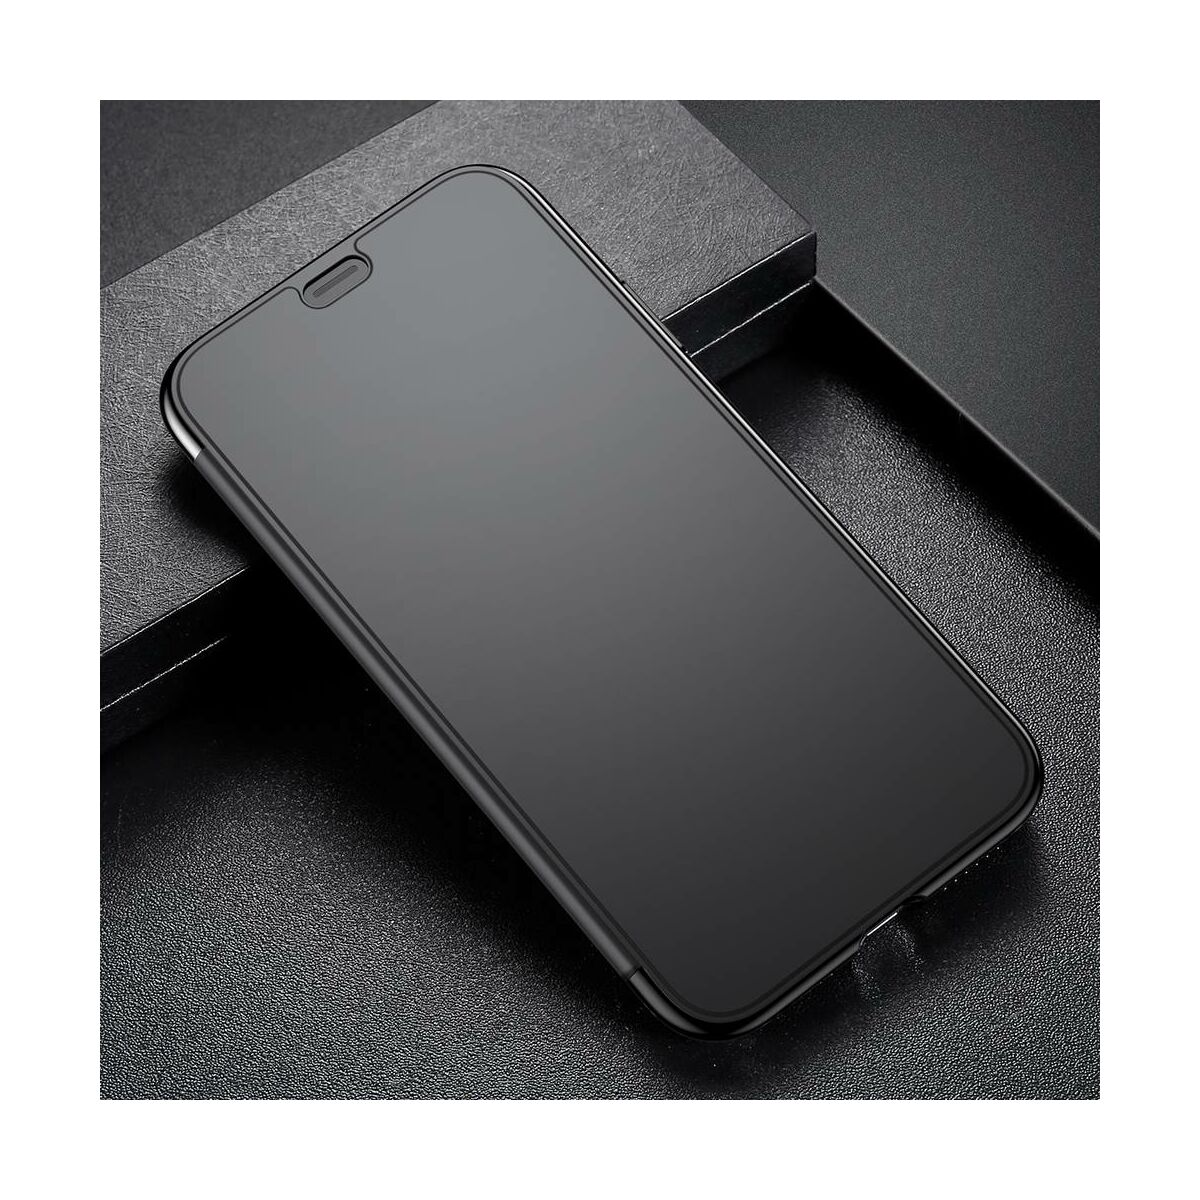 Kép 6/8 - Baseus iPhone XS tok, Touchable kihajtható, érintőfelületű tok, fekete (WIAPIPH58-TS01)